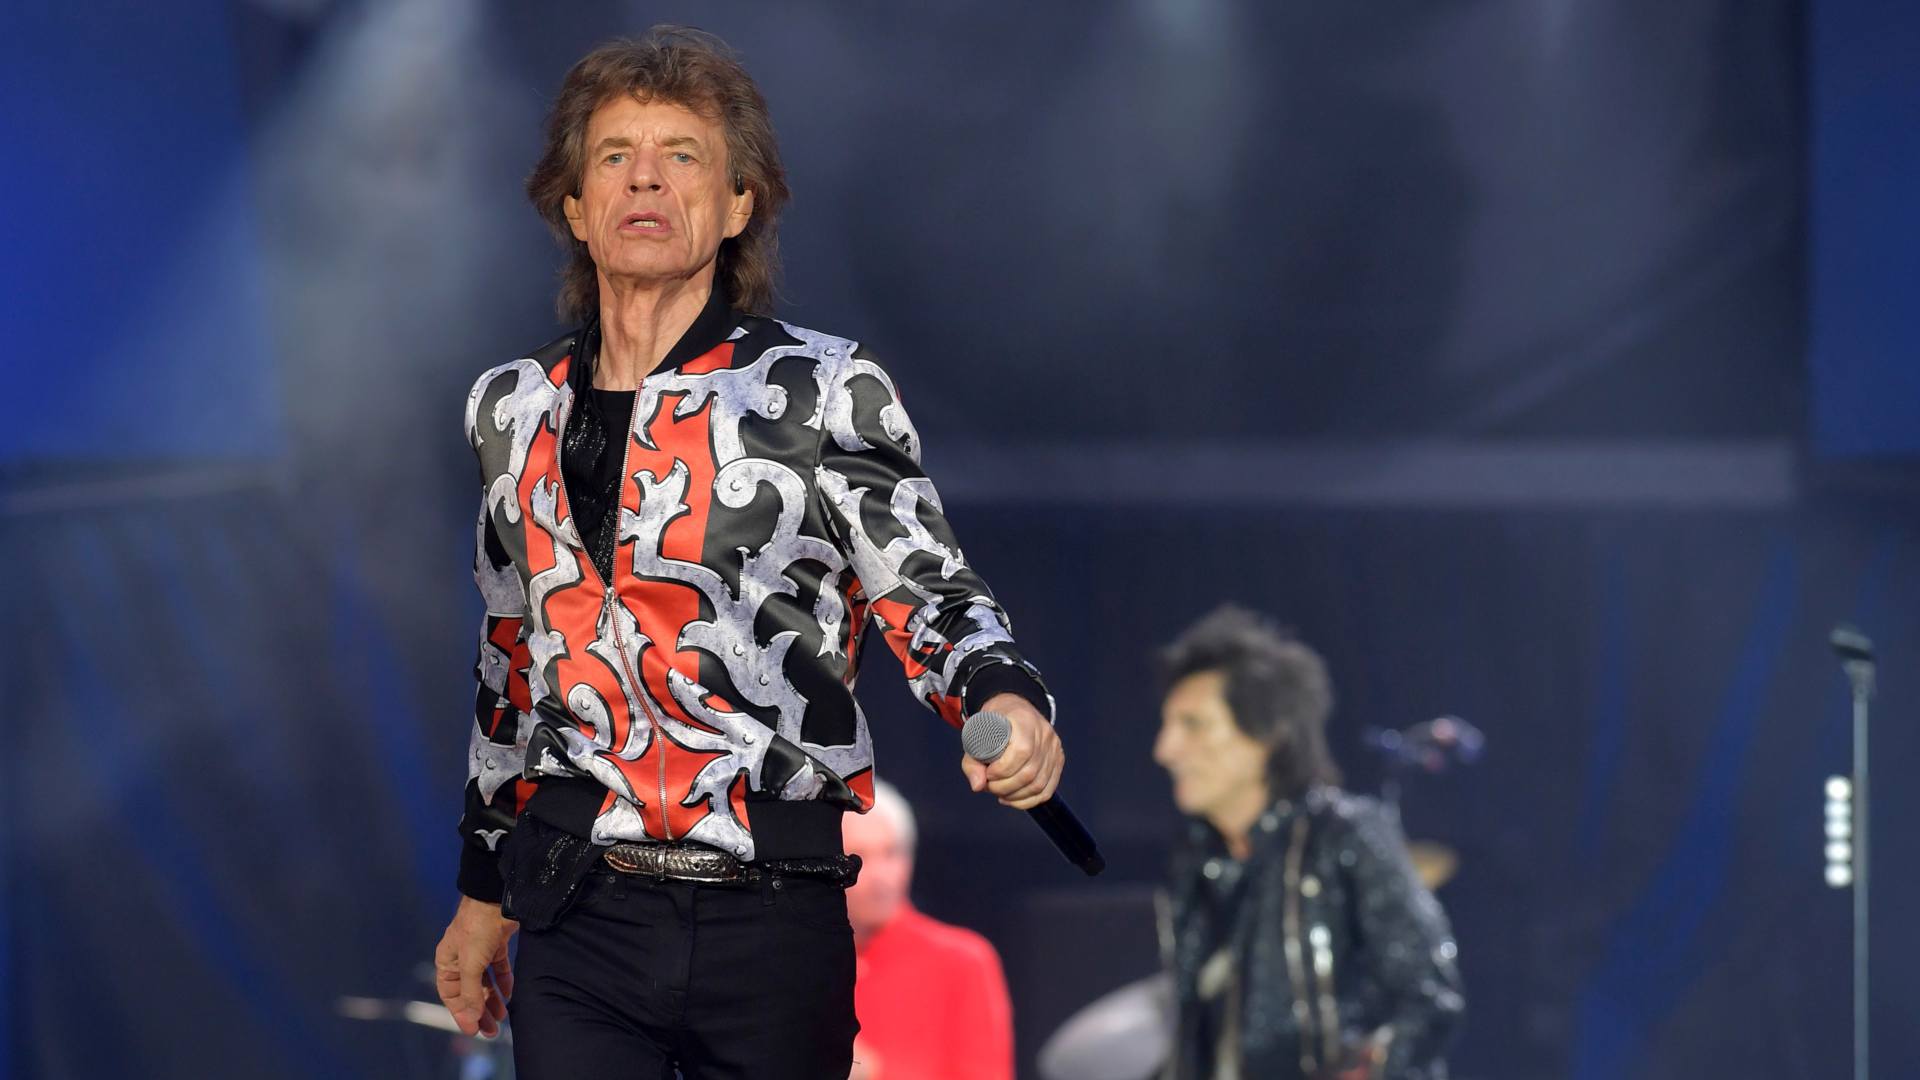 Así es capaz de bailar Mick Jagger con 75 años y después de una operación de corazón